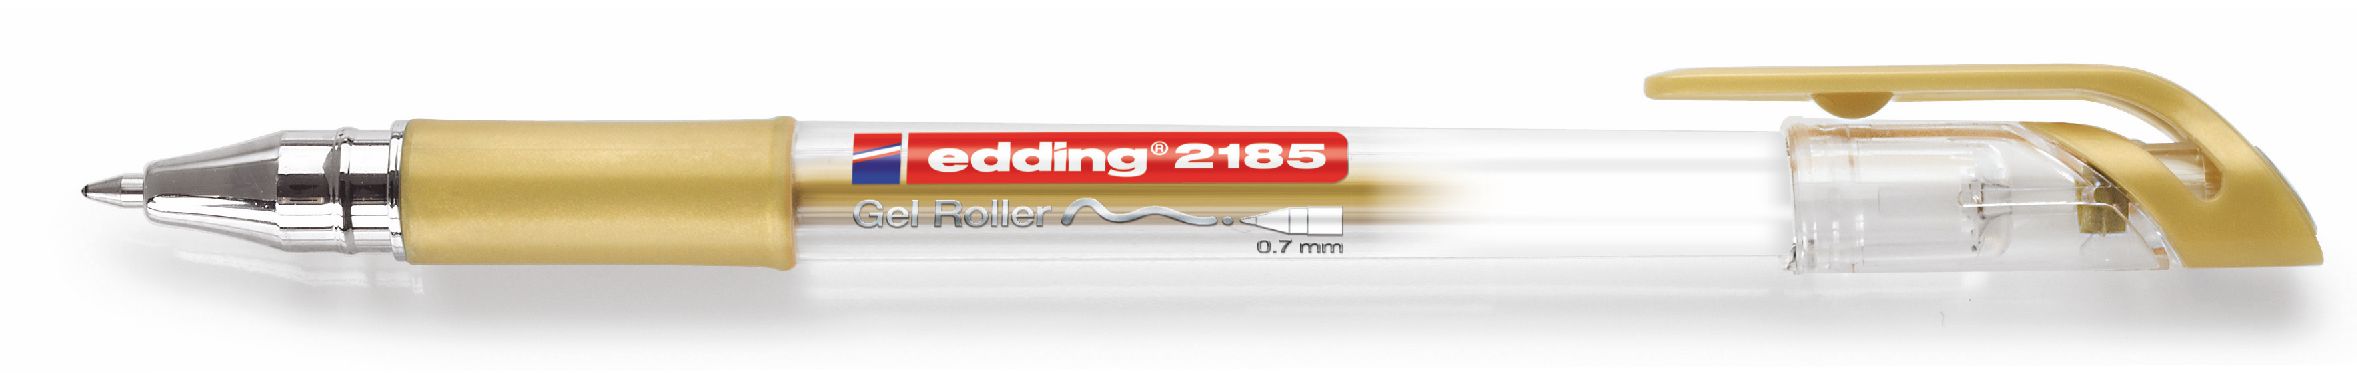 edding-2185-jel-roller